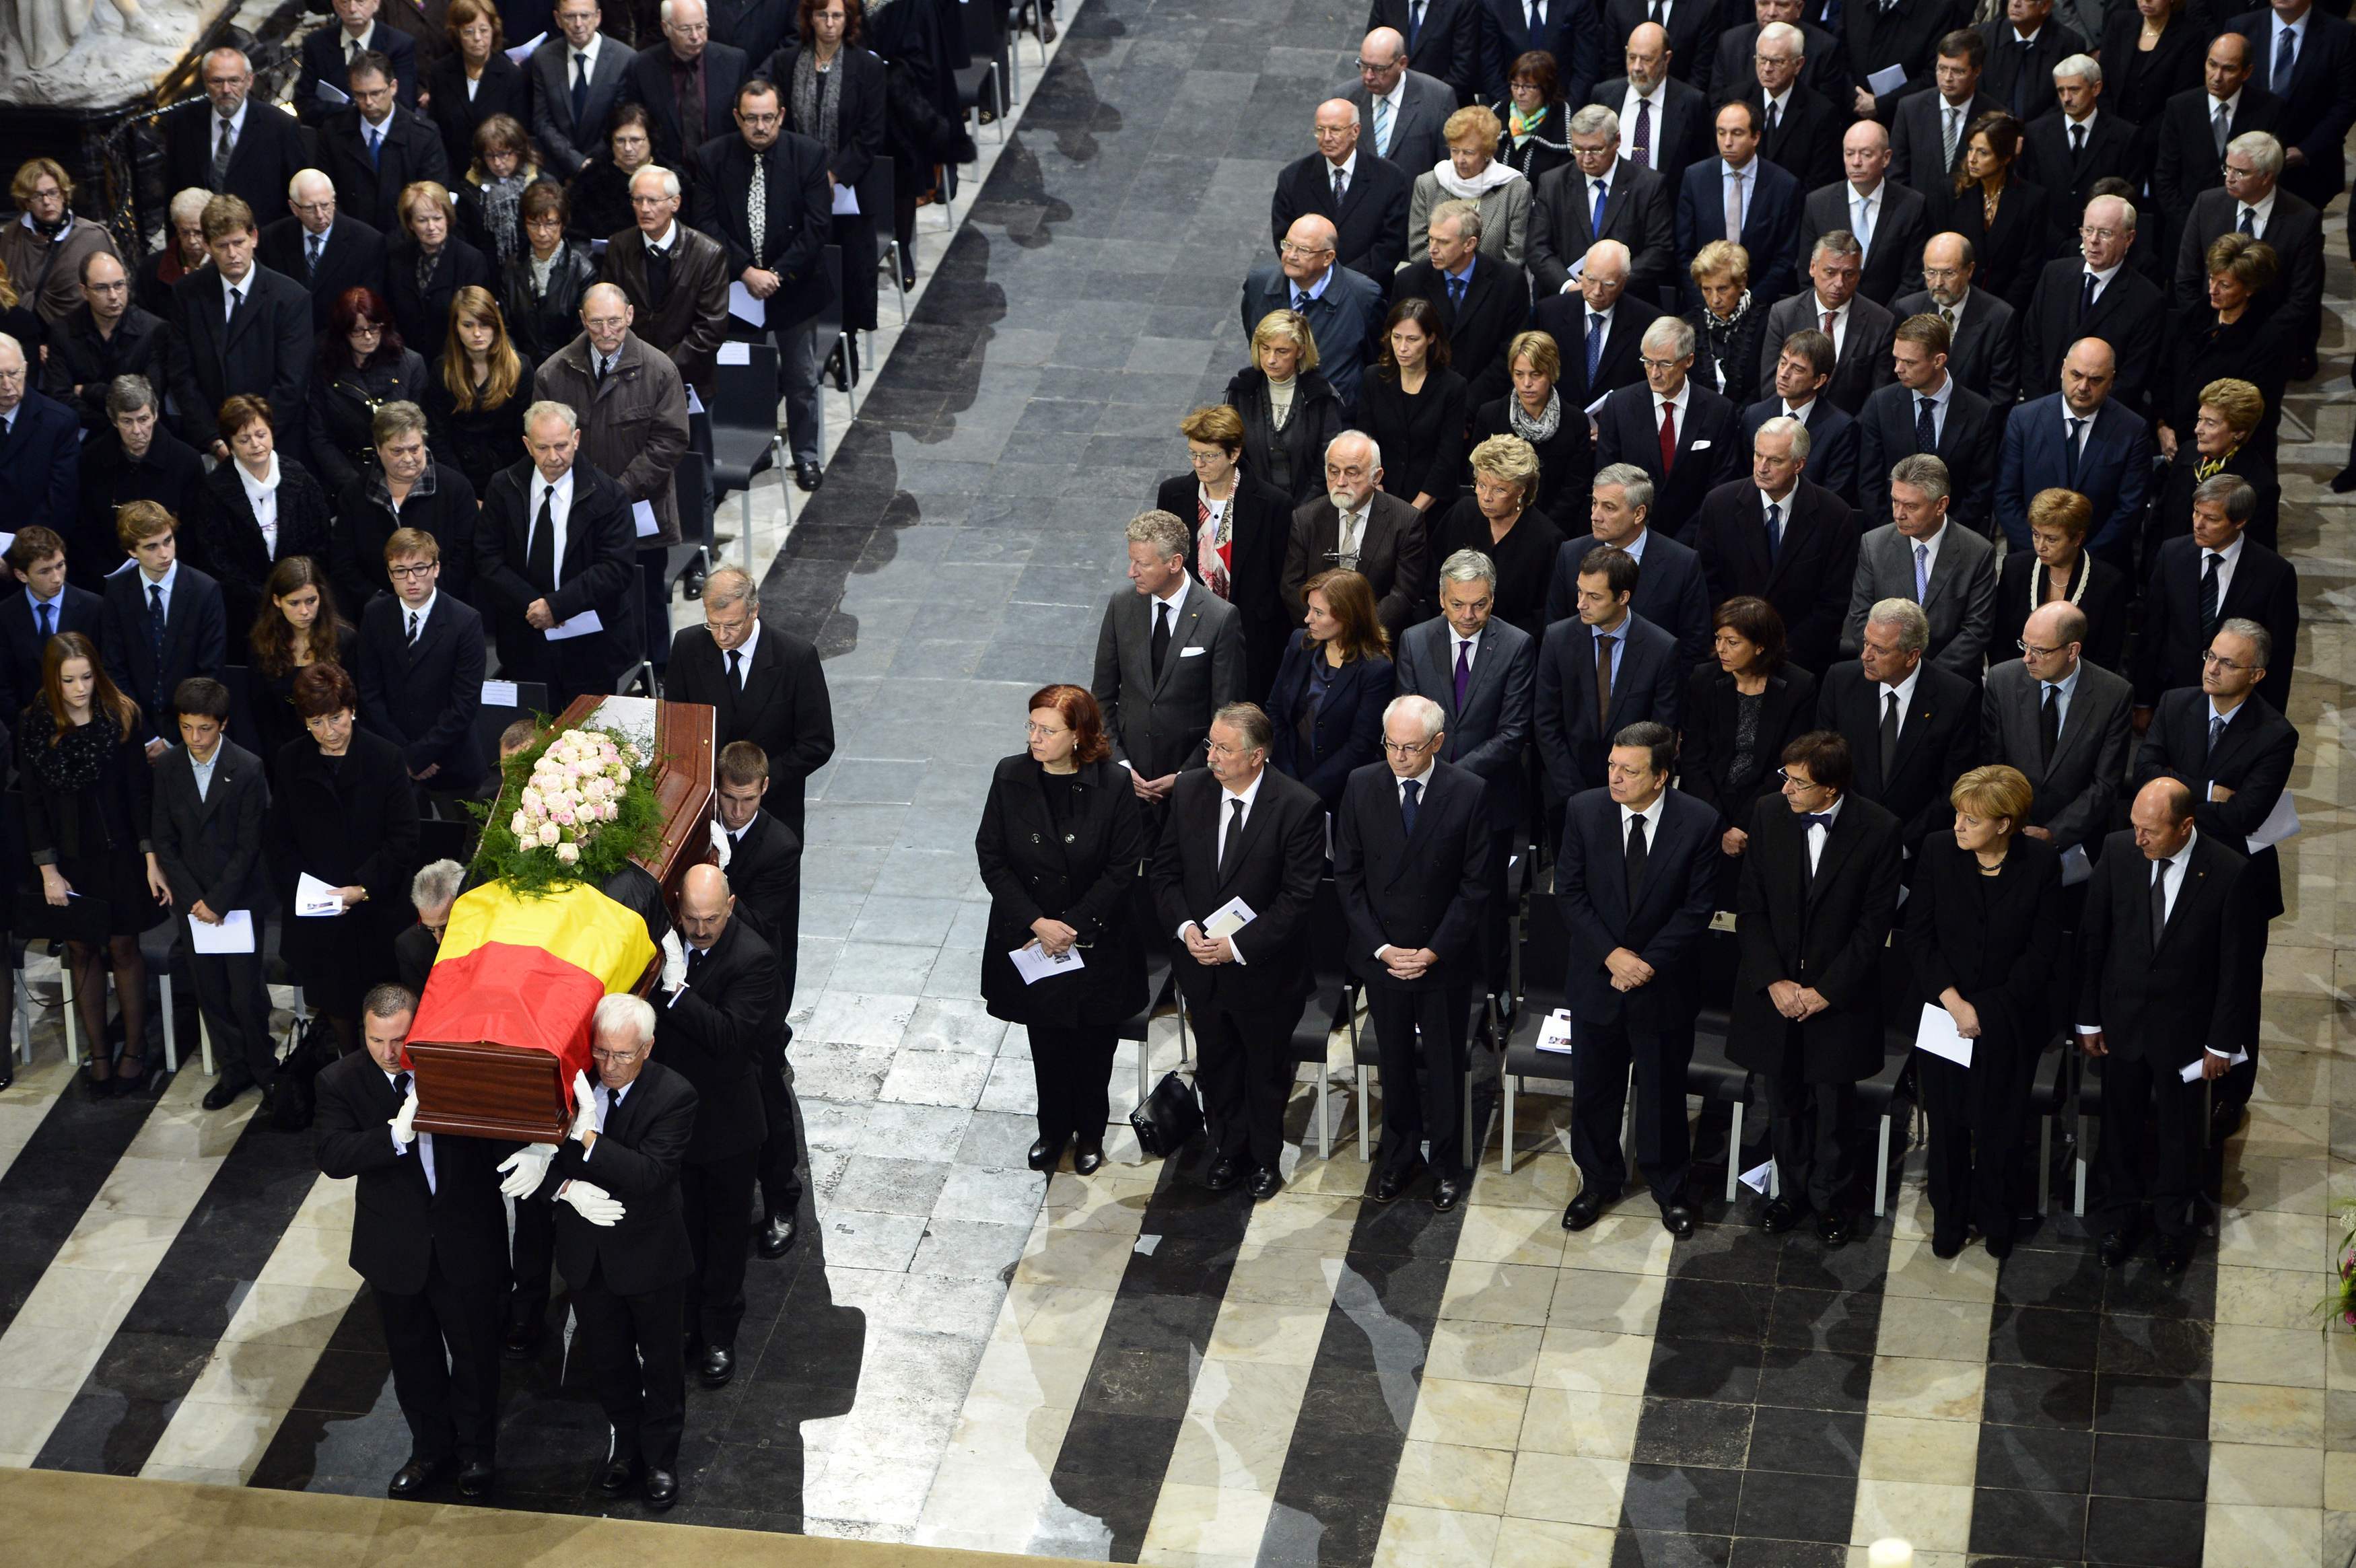 Στην κηδεία του Β. Μάρτενς - Δεξιά στην πρώτη γραμμή η Άγκελα Μέρκελ και πίσω της ακριβώς ο Έλληνας υπουργός - ΦΩΤΟ REUTERS